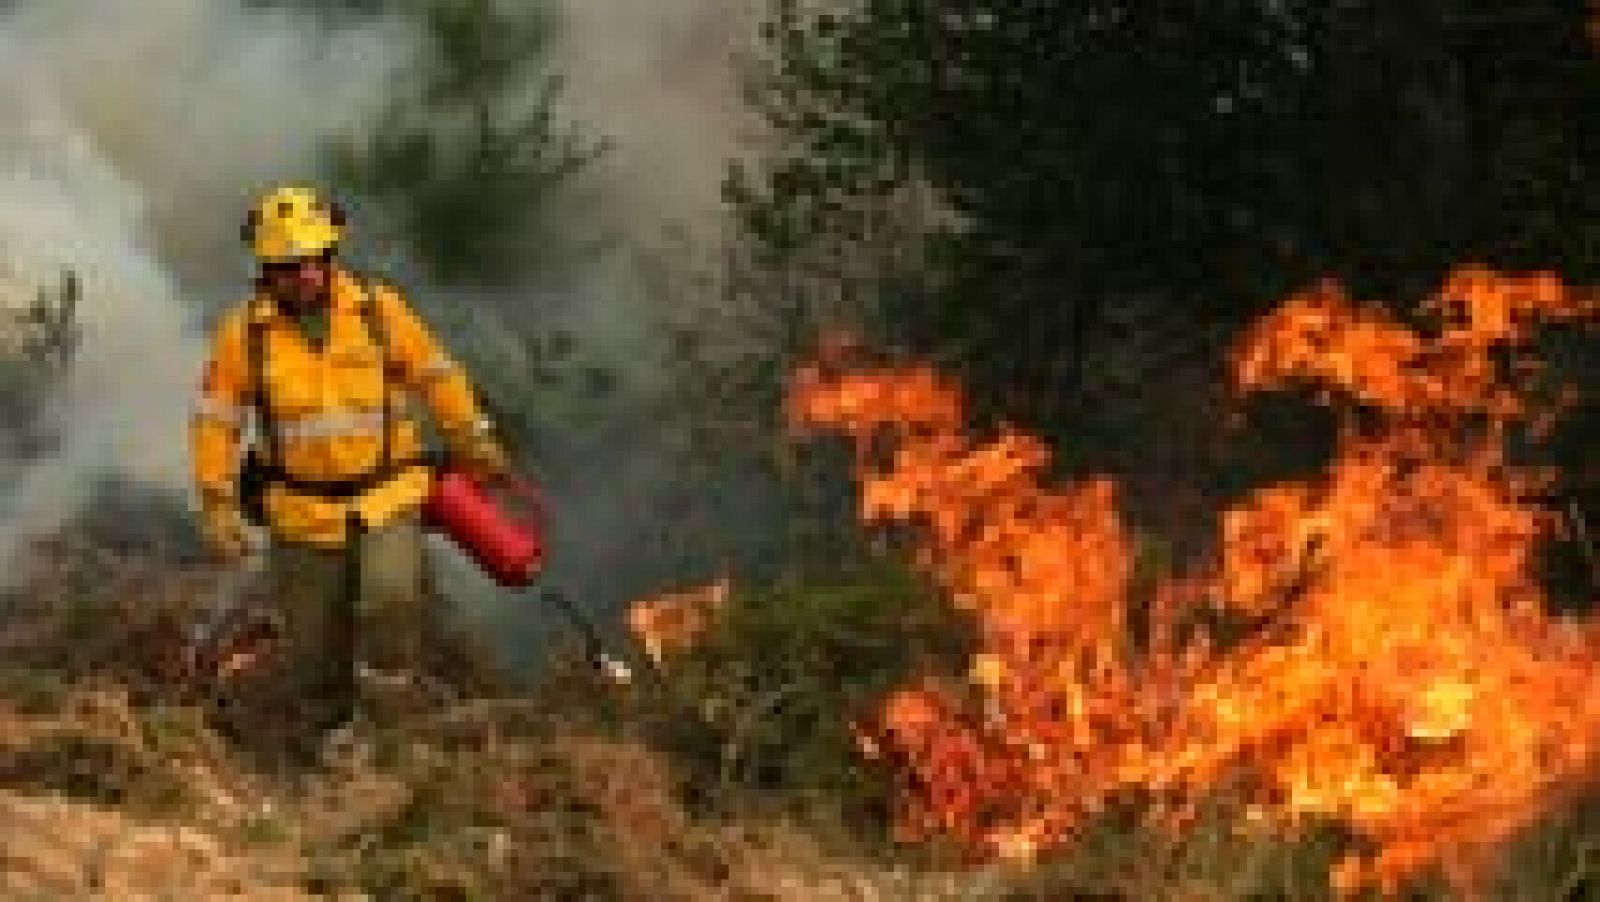 Incendio en Portugal - El jefe de los bomberos portugueses cree que el incendio fue provocado